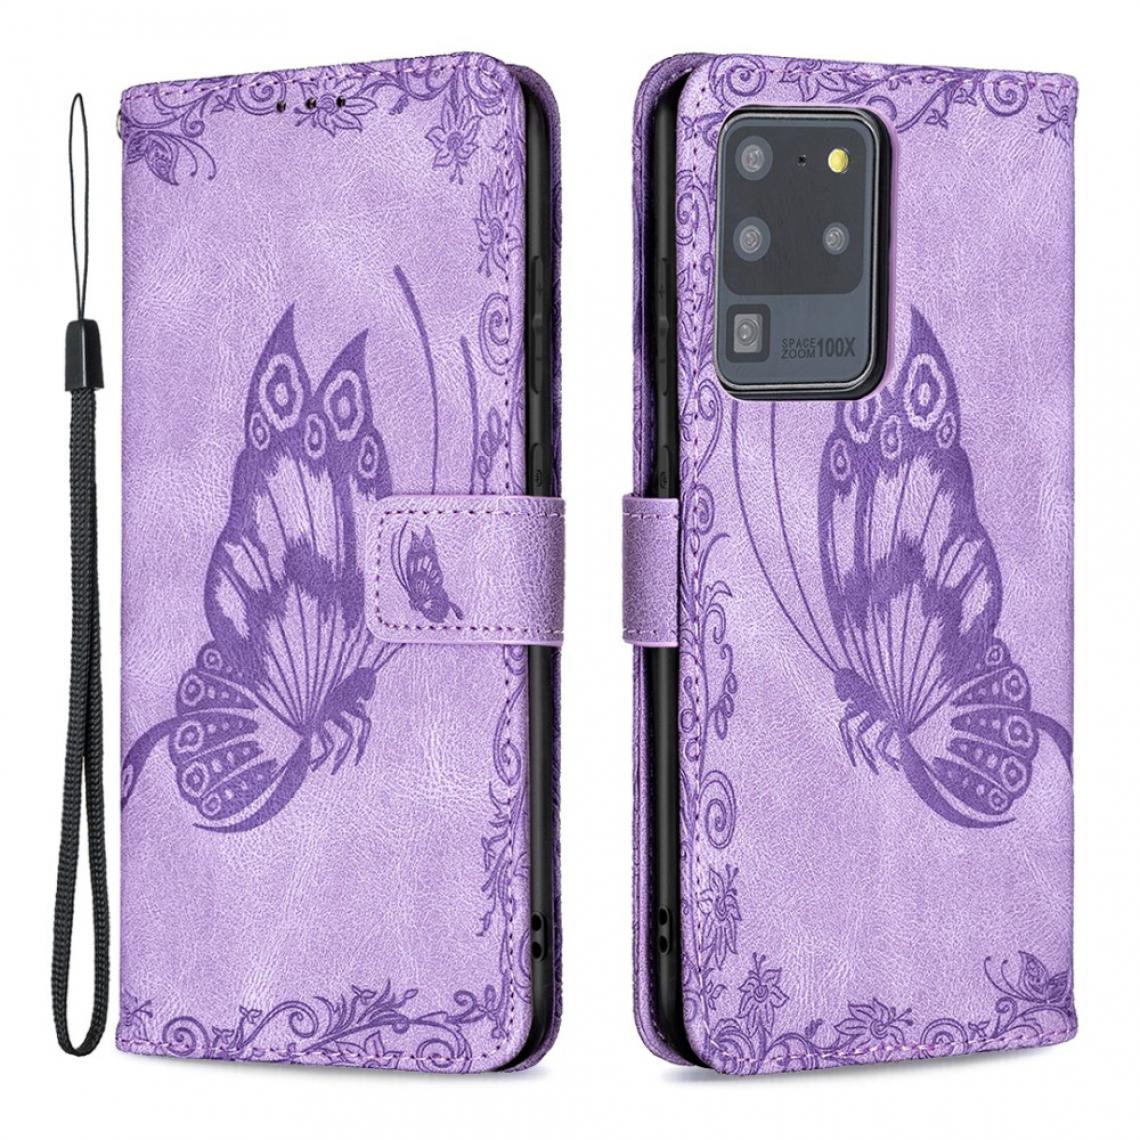 Other - Etui en PU Empreinte Papillon Fleur violet pour votre Samsung Galaxy S20 Ultra - Coque, étui smartphone